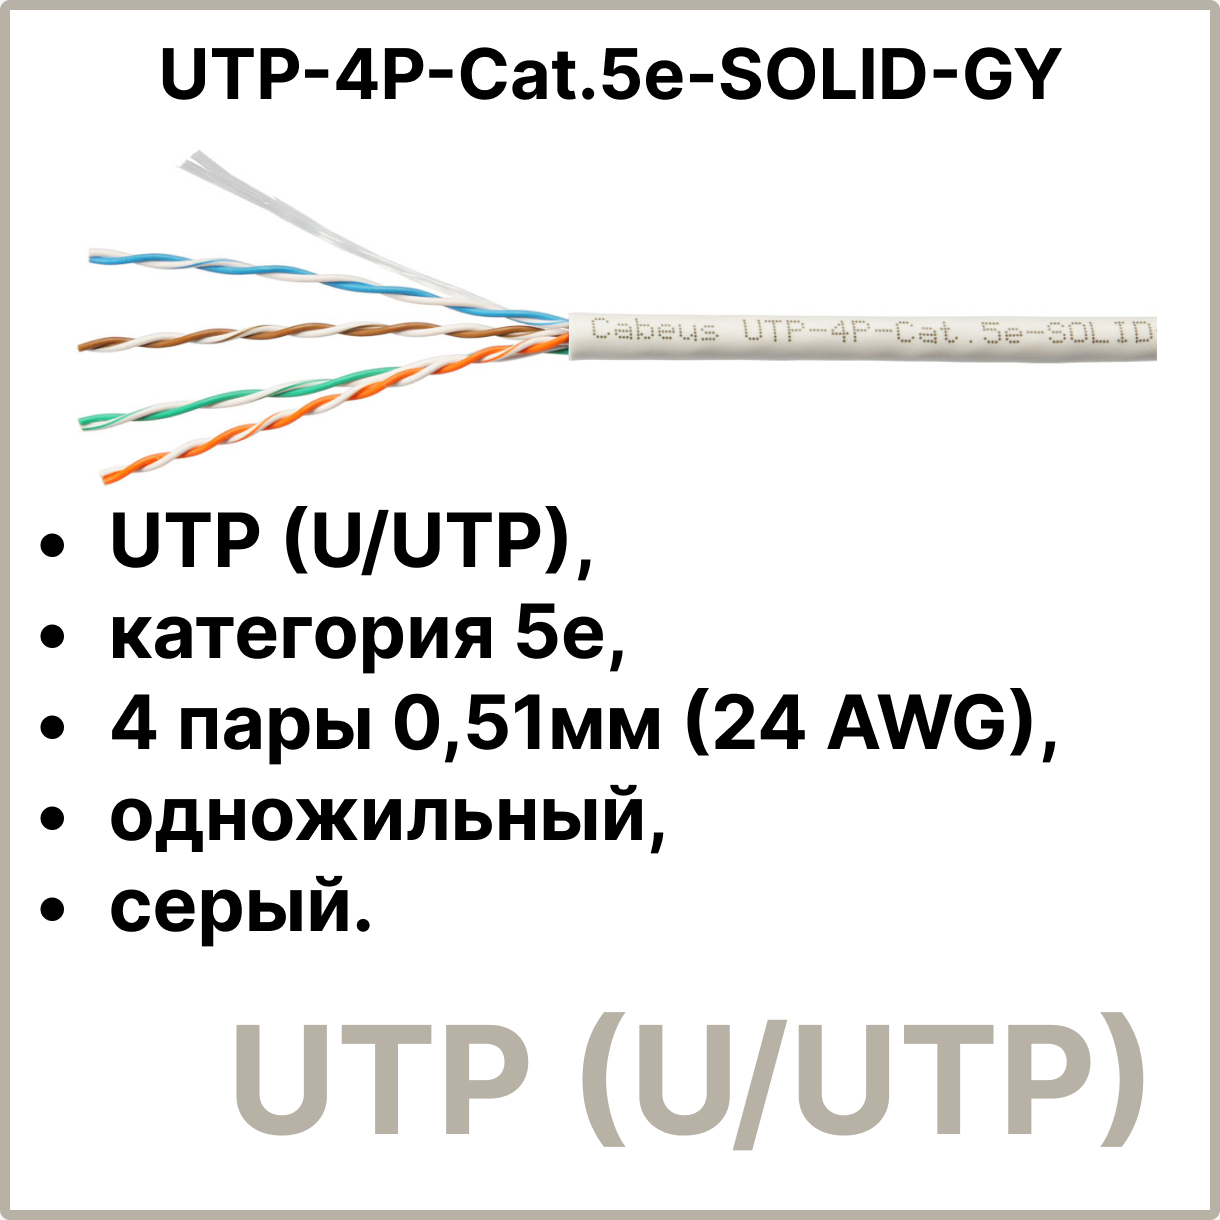 Cabeus UTP-4P-Cat.5e-SOLID-GY Кабель витая пара UTP (U/UTP), категория 5e, 4 пары 0,51мм (24 AWG), одножильный, серый (305 м), системная гарантия 25 лет.